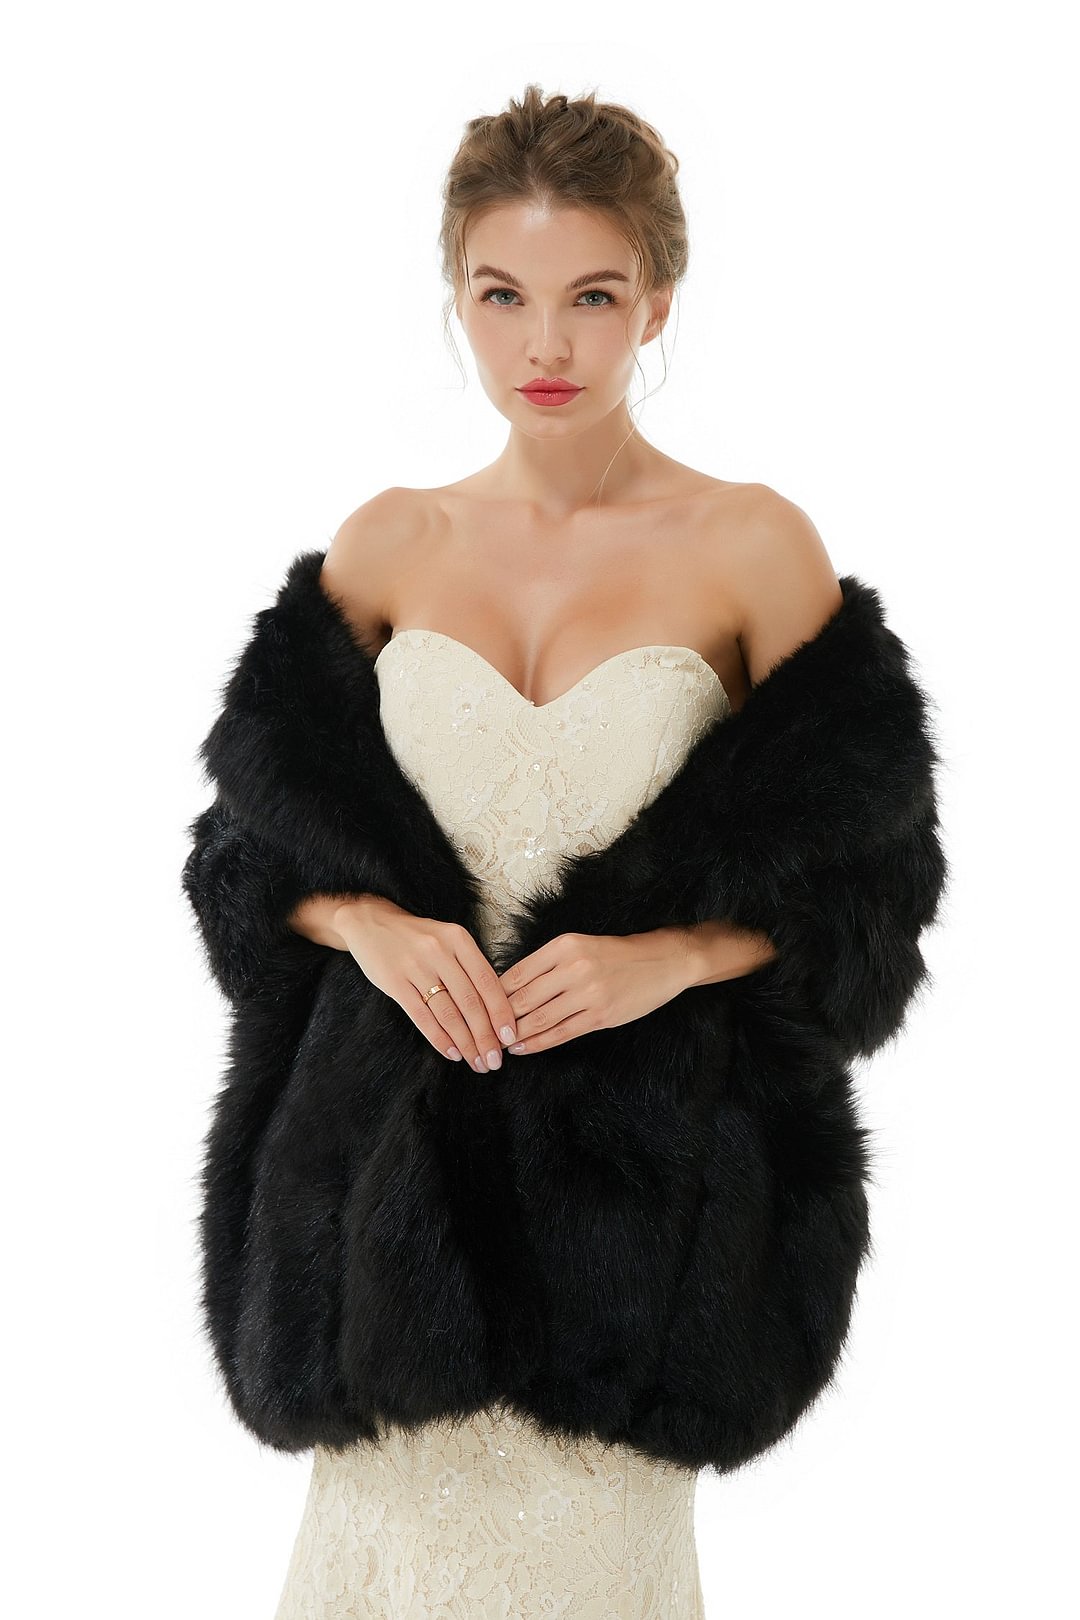 Luluslly Faux Fur Wedding Wrap For Bride Black Shawl